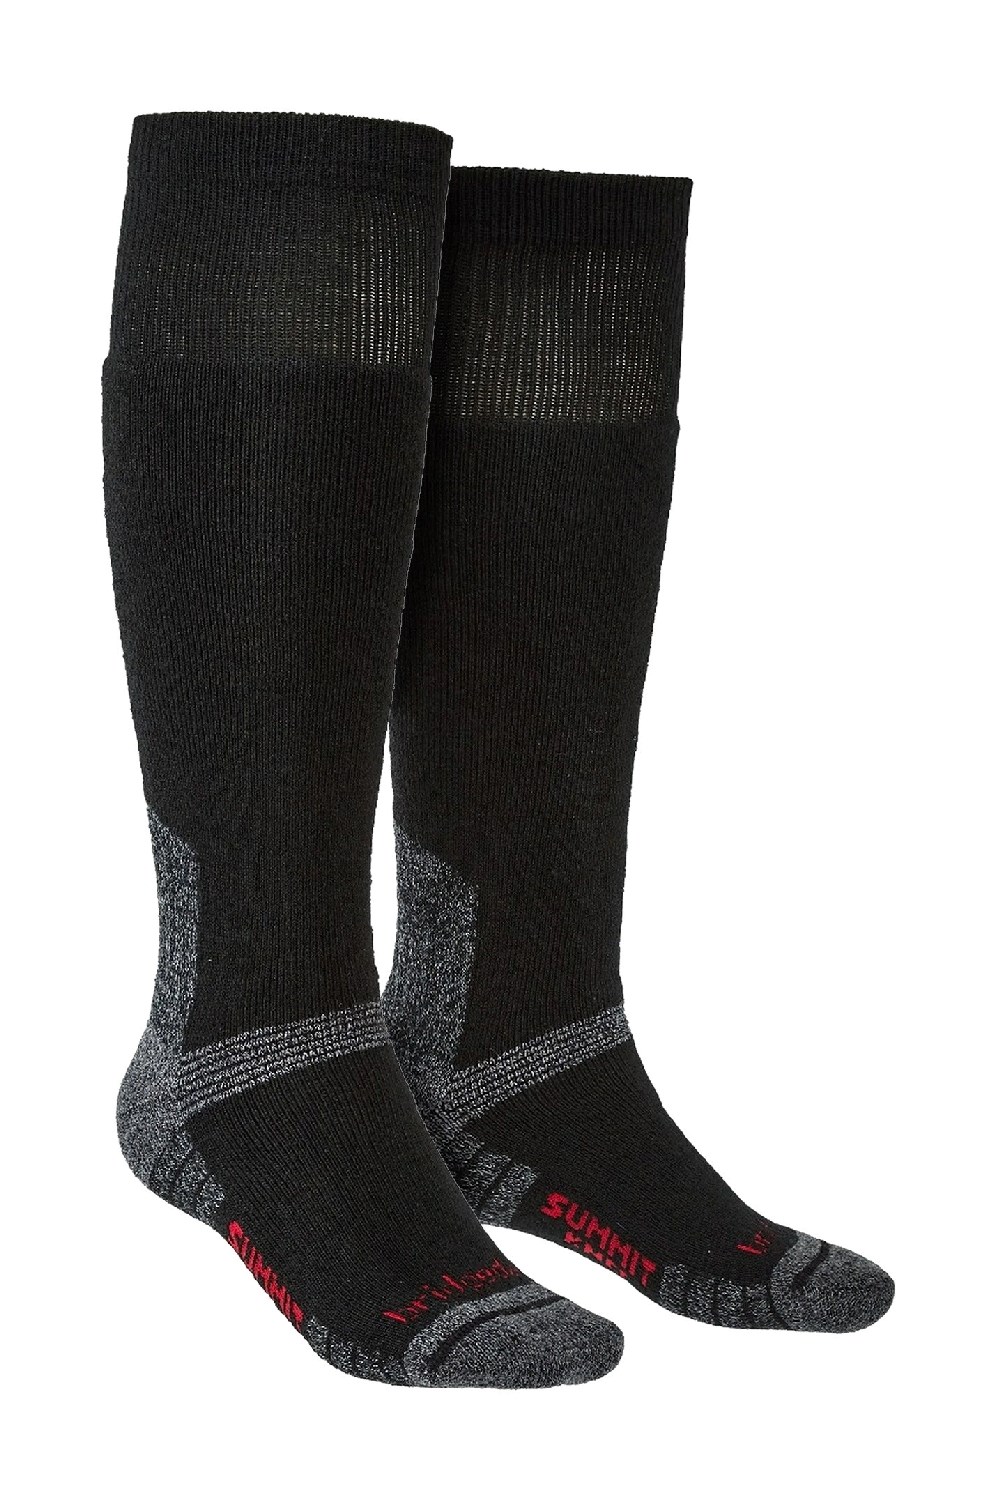 Mens Outdoor Merino Socks